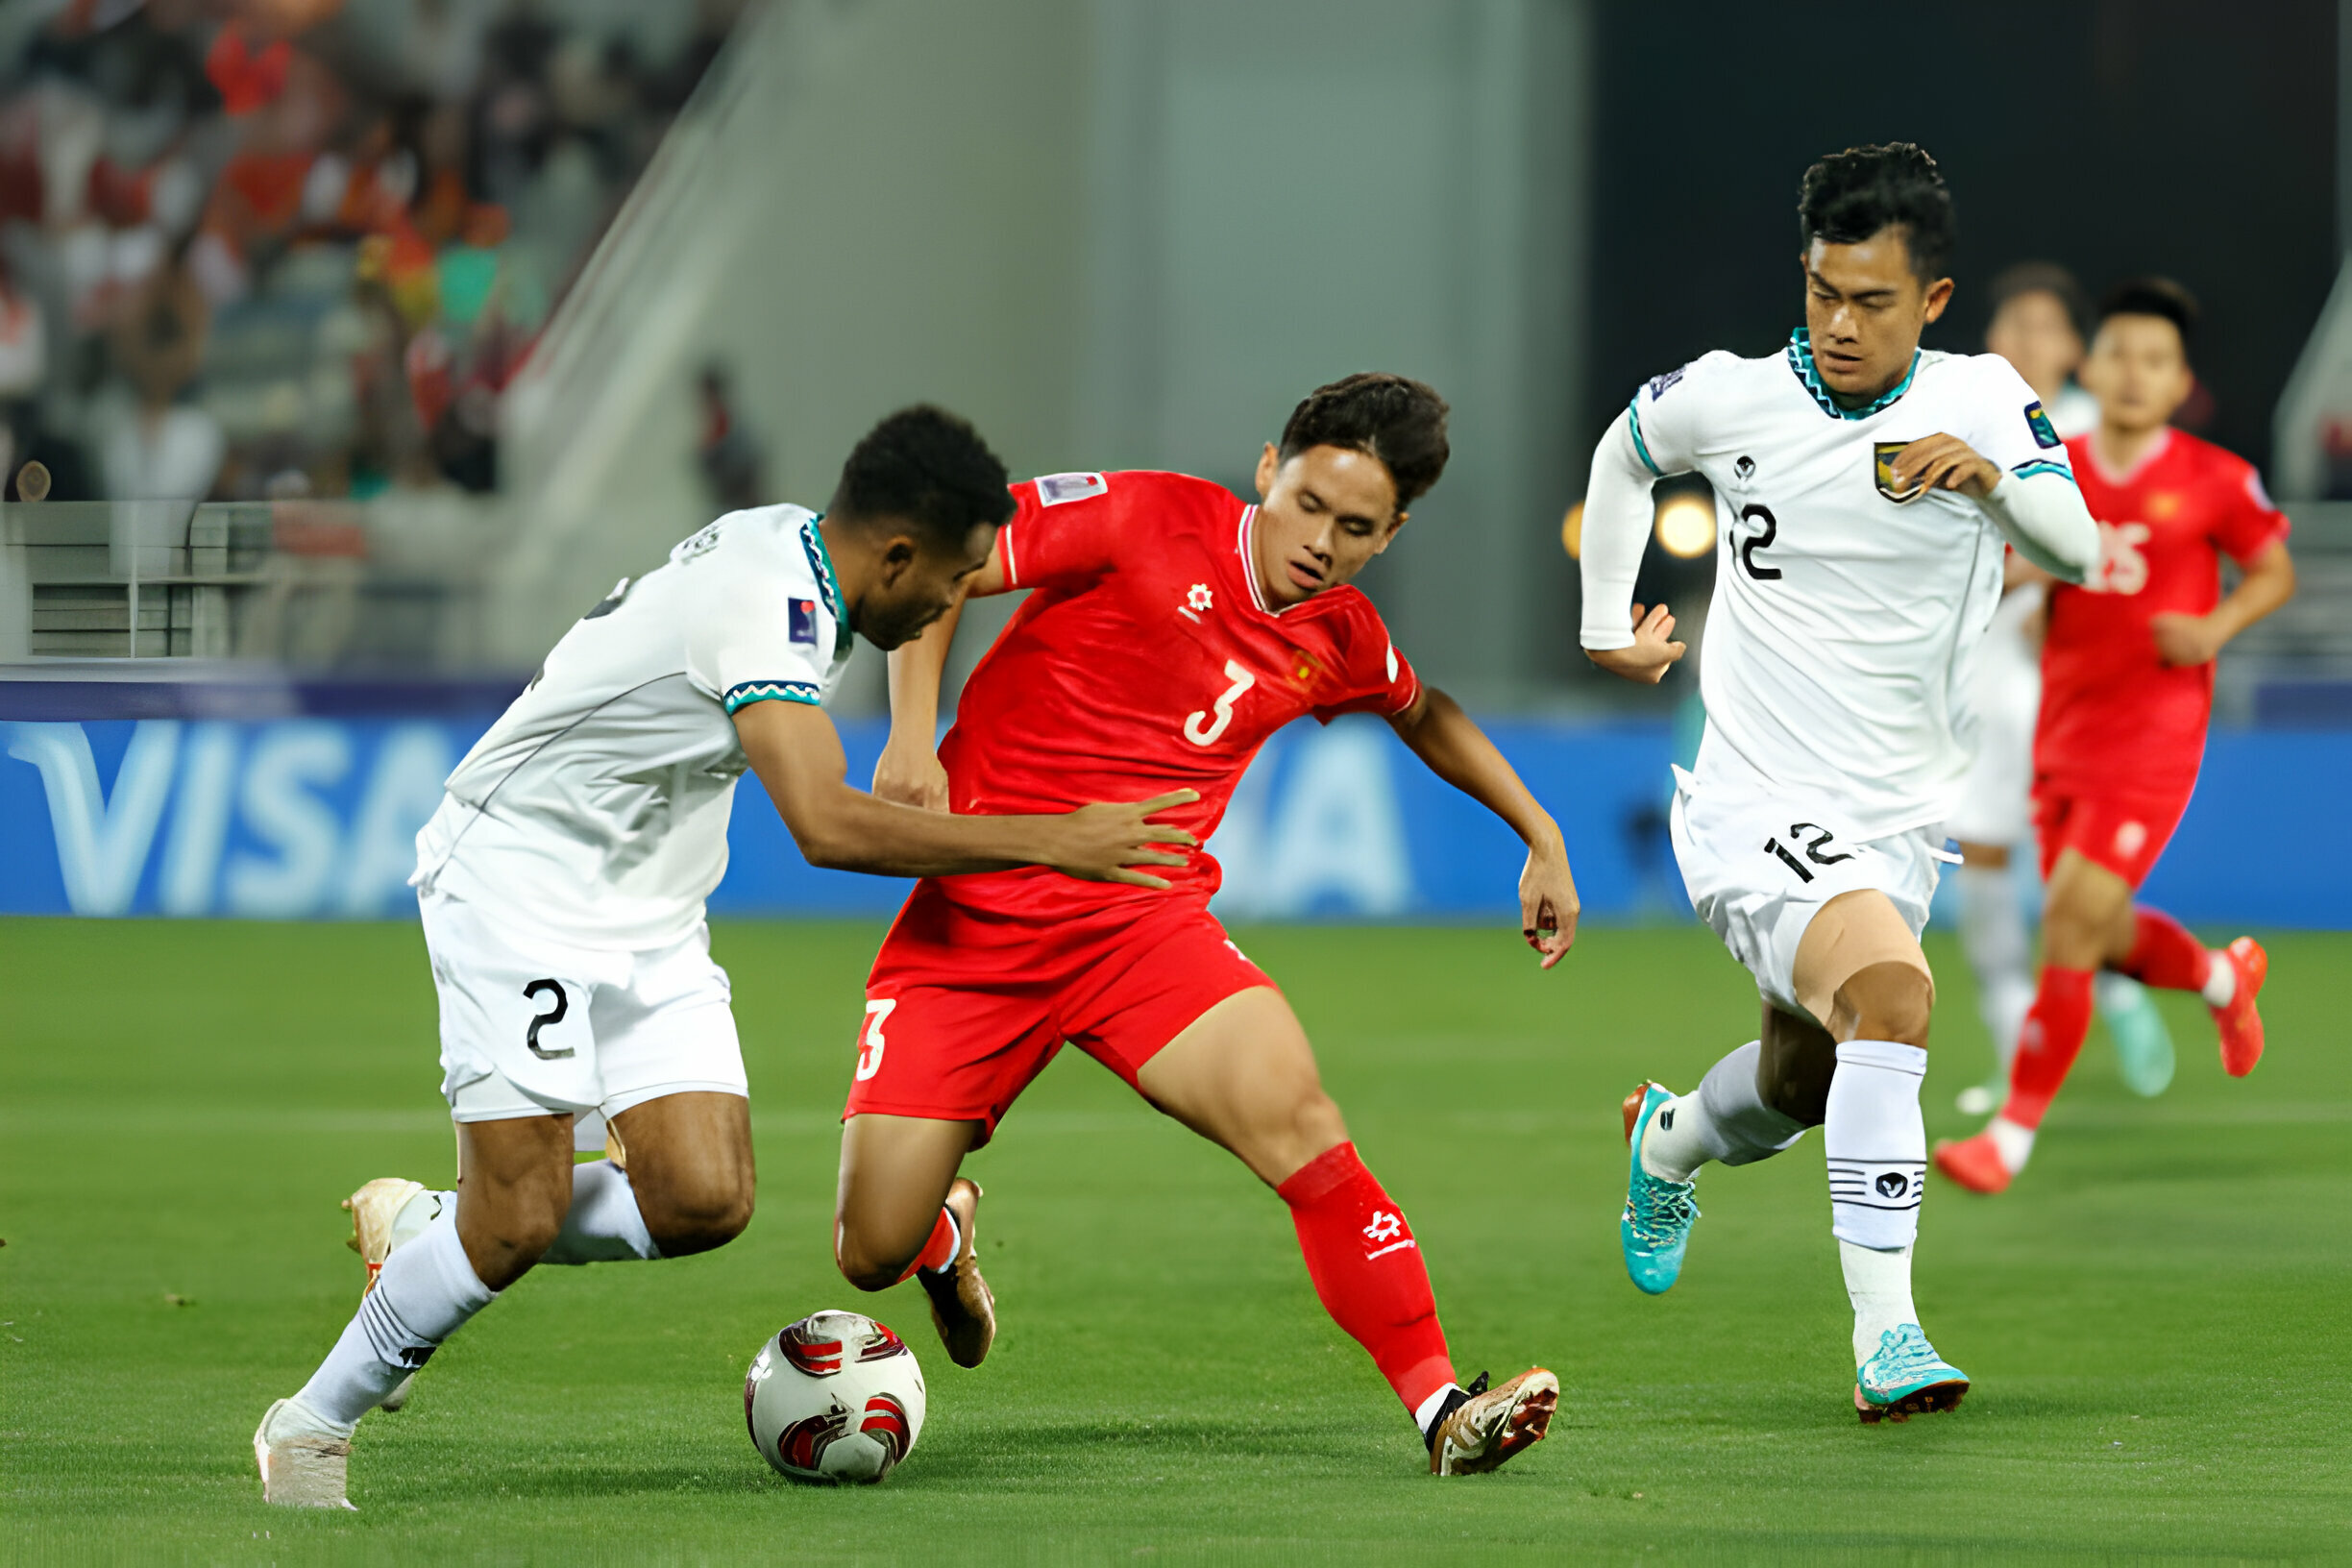 TRỰC TIẾP Việt Nam 0-1 Indonesia (H2): Tuấn Anh bỏ lỡ cơ hội gỡ hòa - Bóng Đá